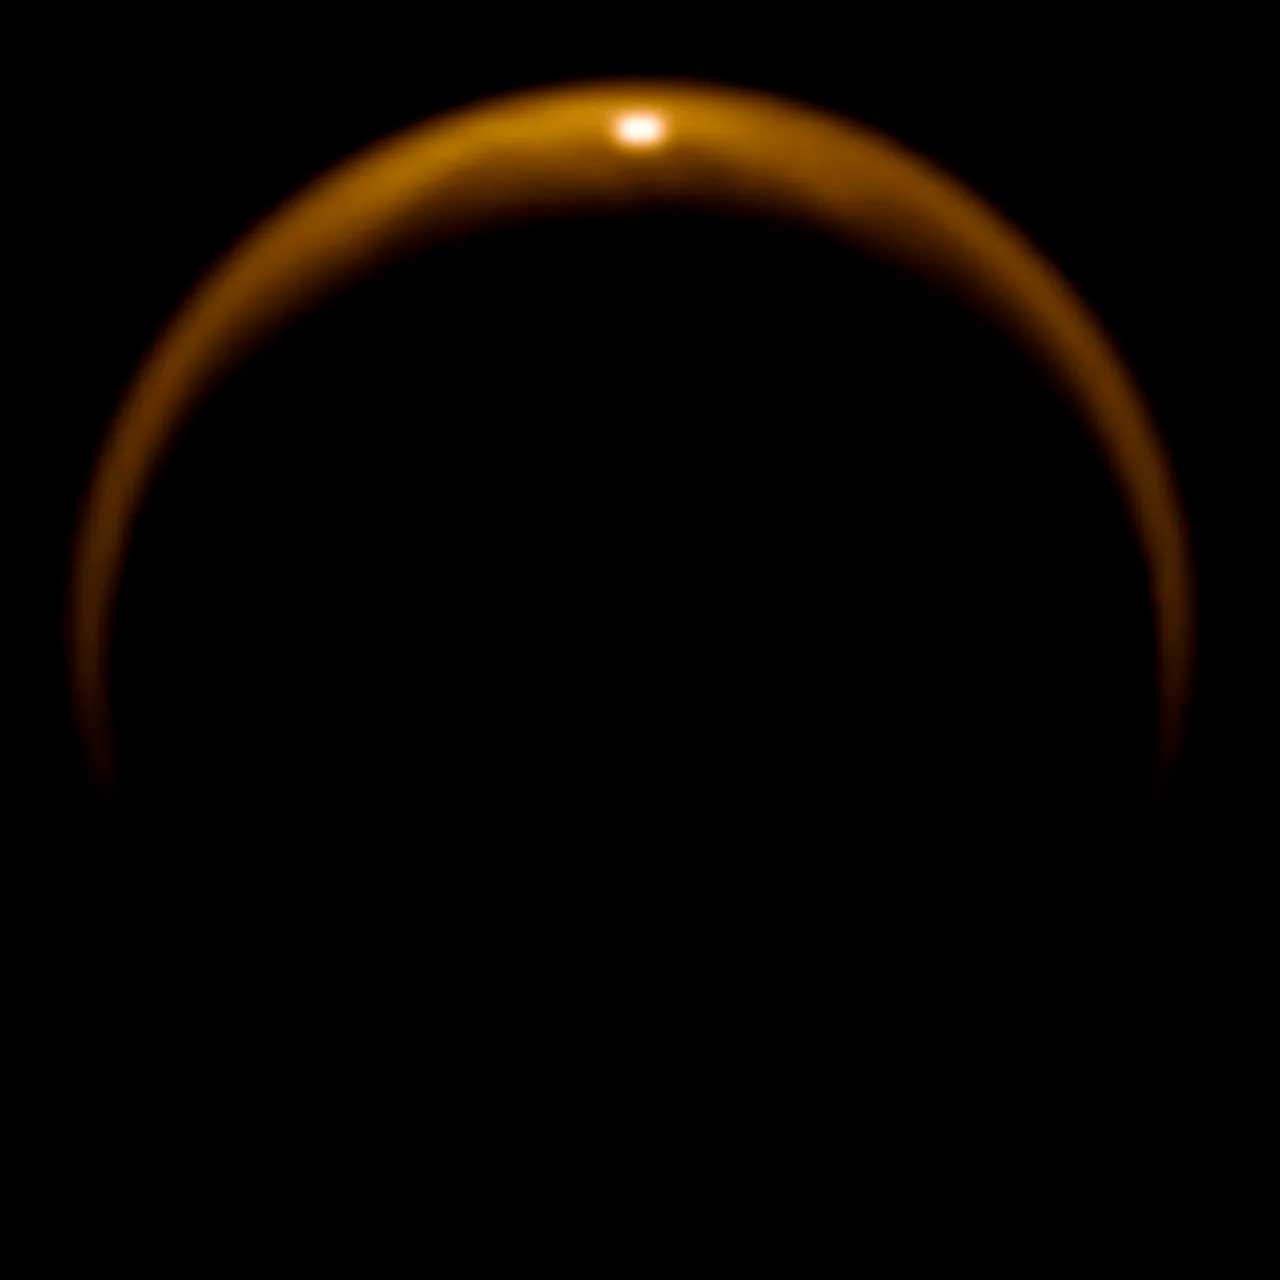 Блик на фото - отражение солнечного света от поверхности жидкого метанового озера на Титане. Впечатляет, а?